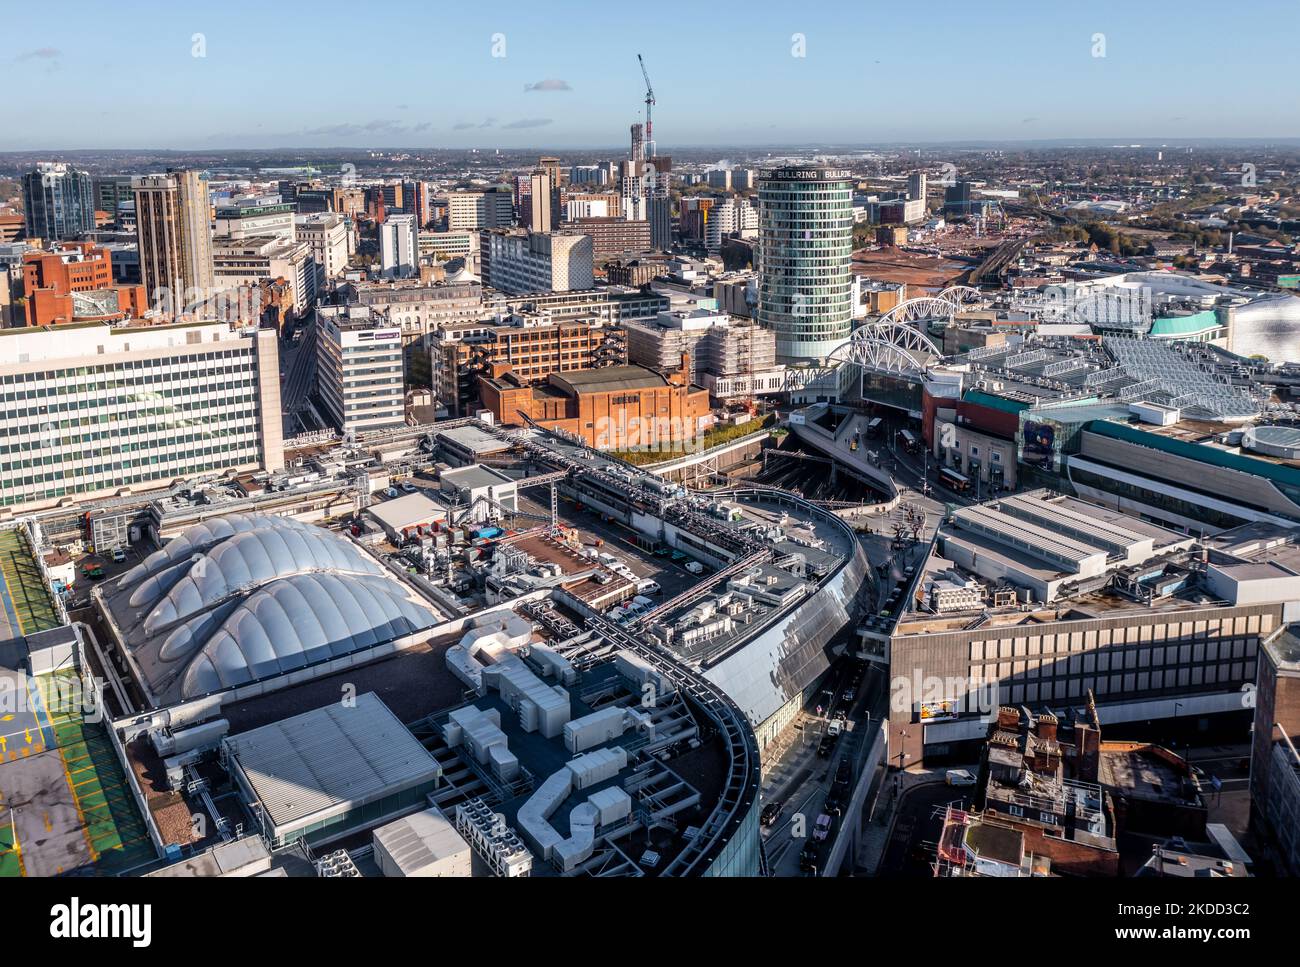 BIRMINGHAM, GROSSBRITANNIEN - 4. NOVEMBER 2022. Blick aus der Vogelperspektive auf die Skyline der Stadt Birmingham mit dem Bullring Rotunda Gebäude und der New Street Station Stockfoto